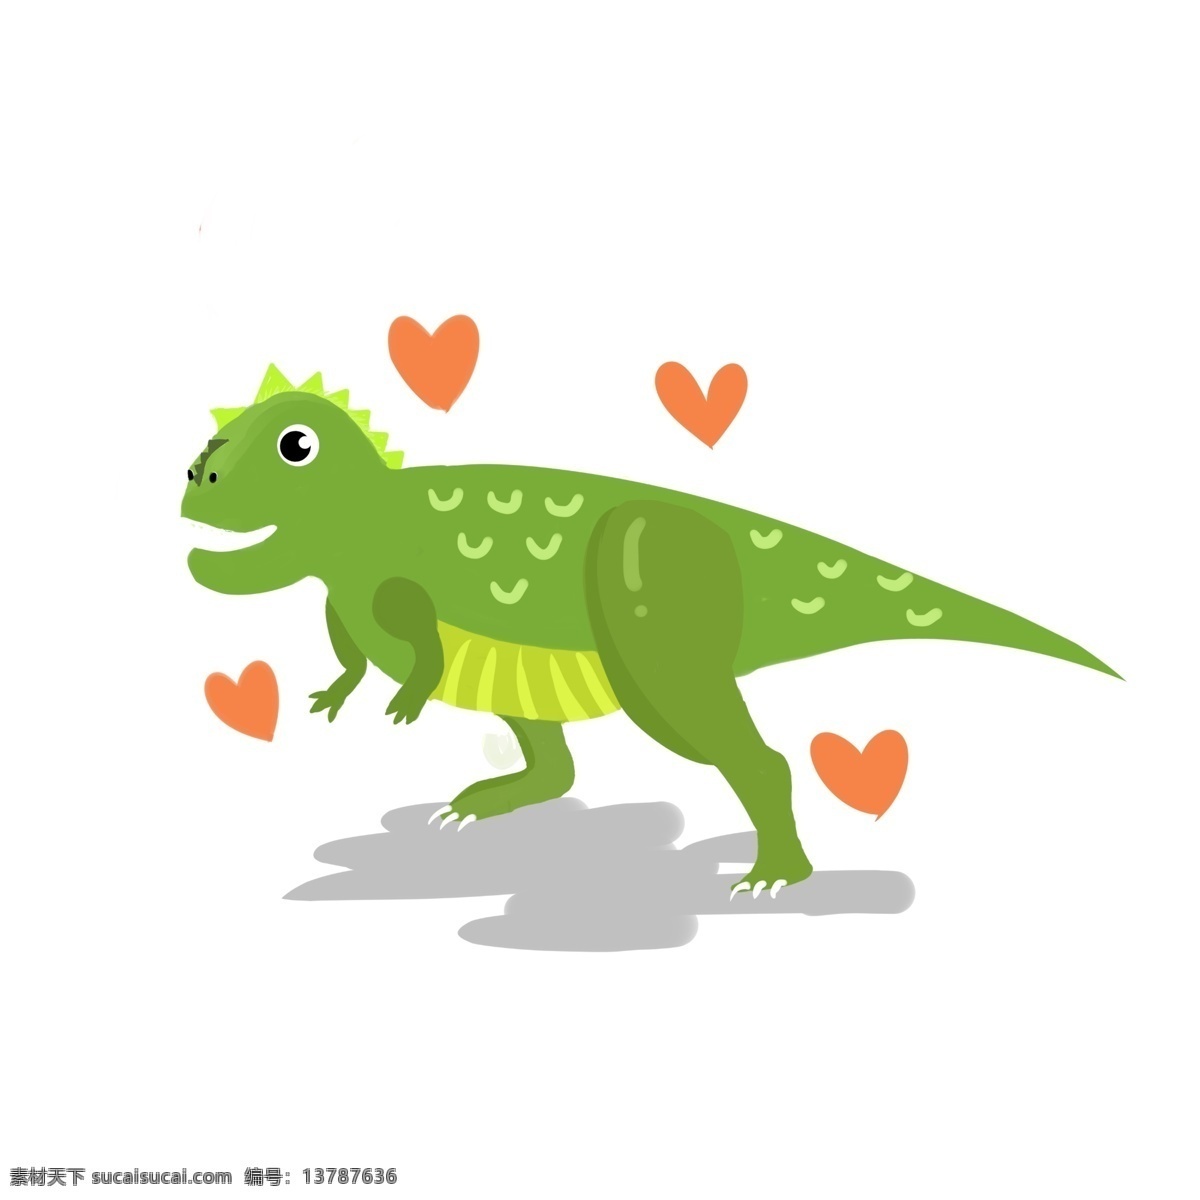 绿色 草食 恐龙 爱心 绿色的恐龙 草食恐龙 红色爱心 可爱 动物插画 谈恋爱的恐龙 行走的恐龙 爪子